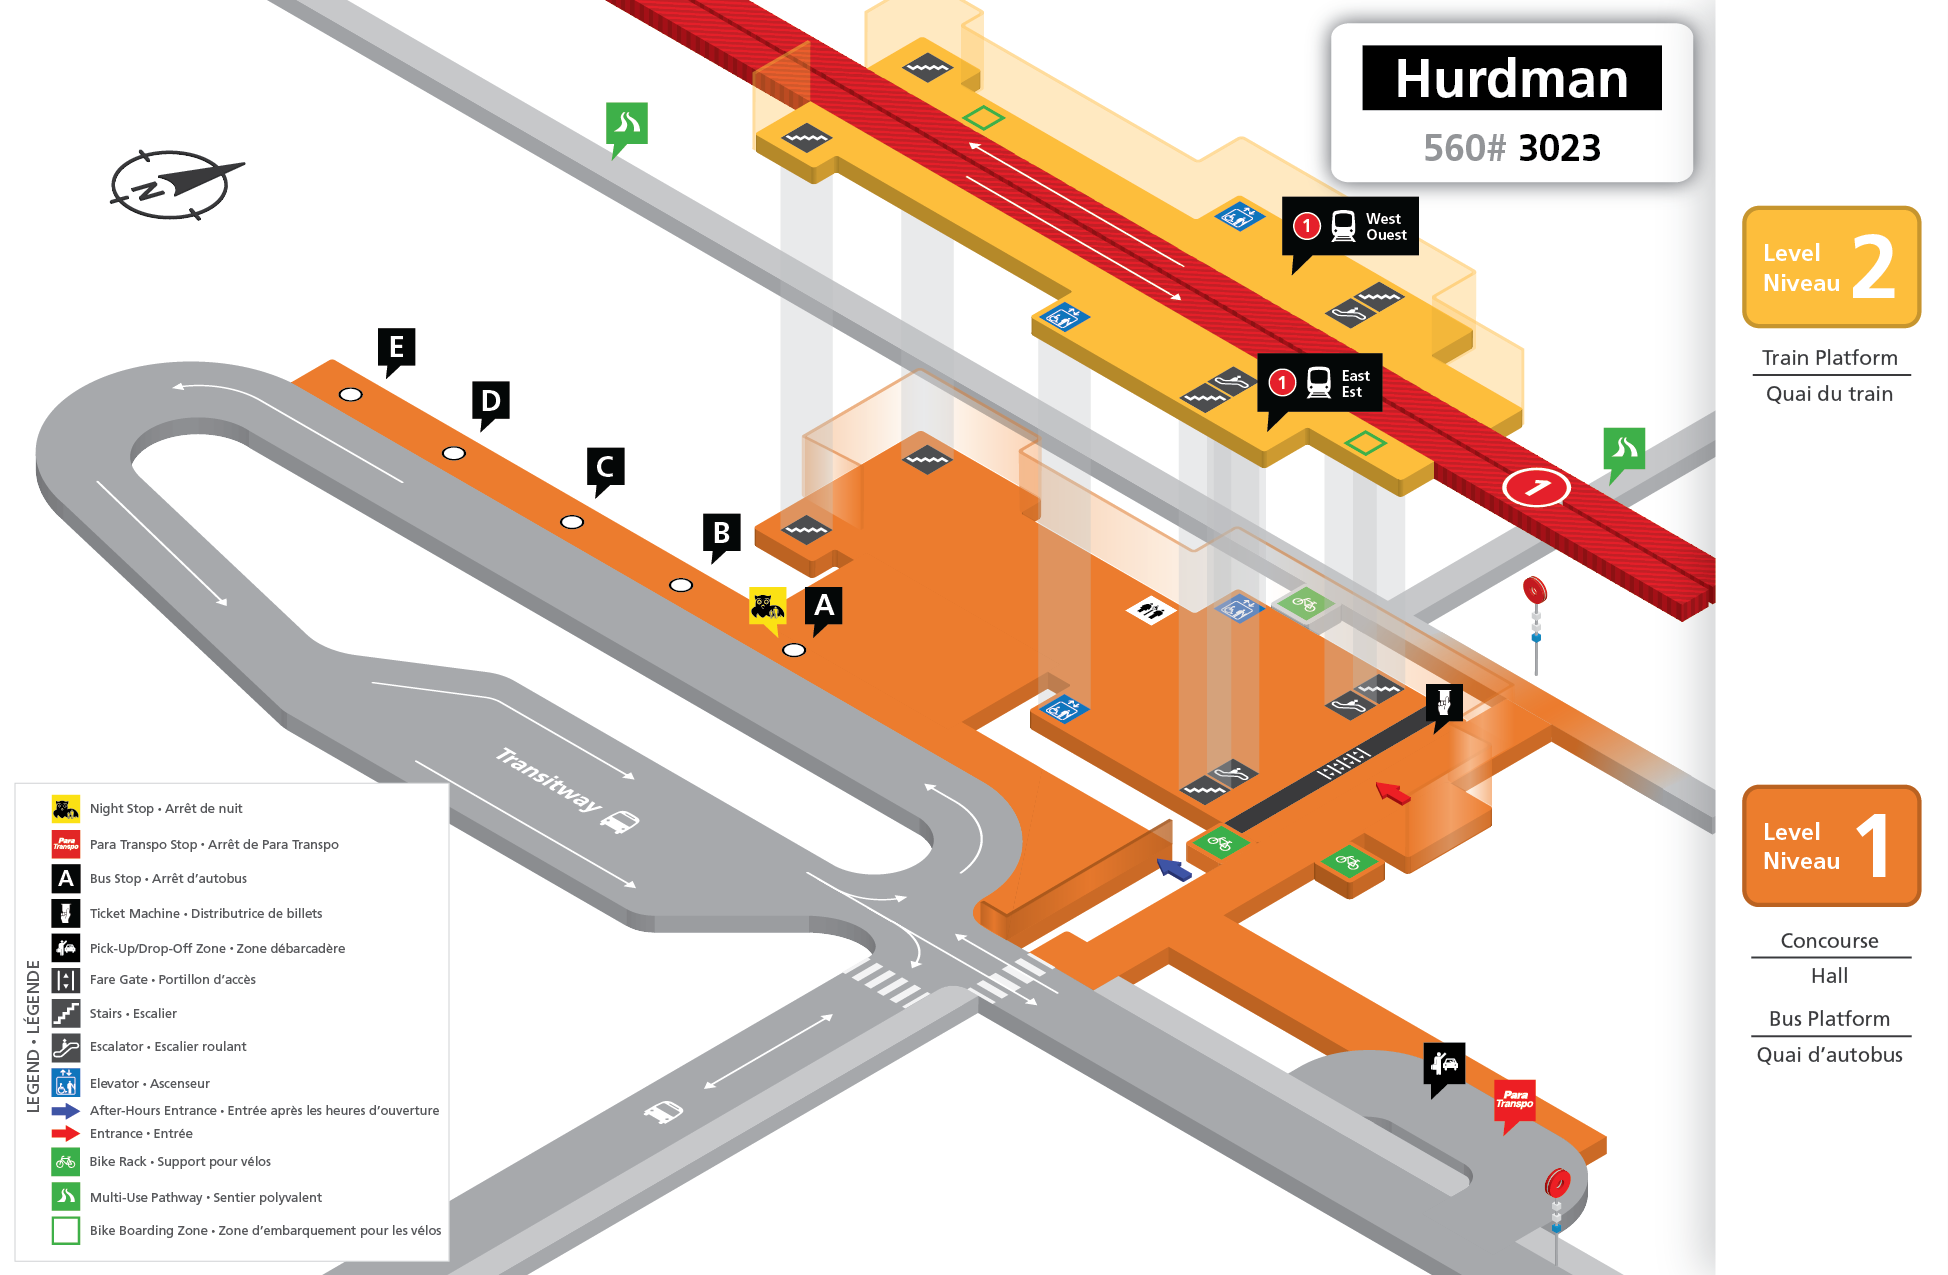 Hurdman station layout